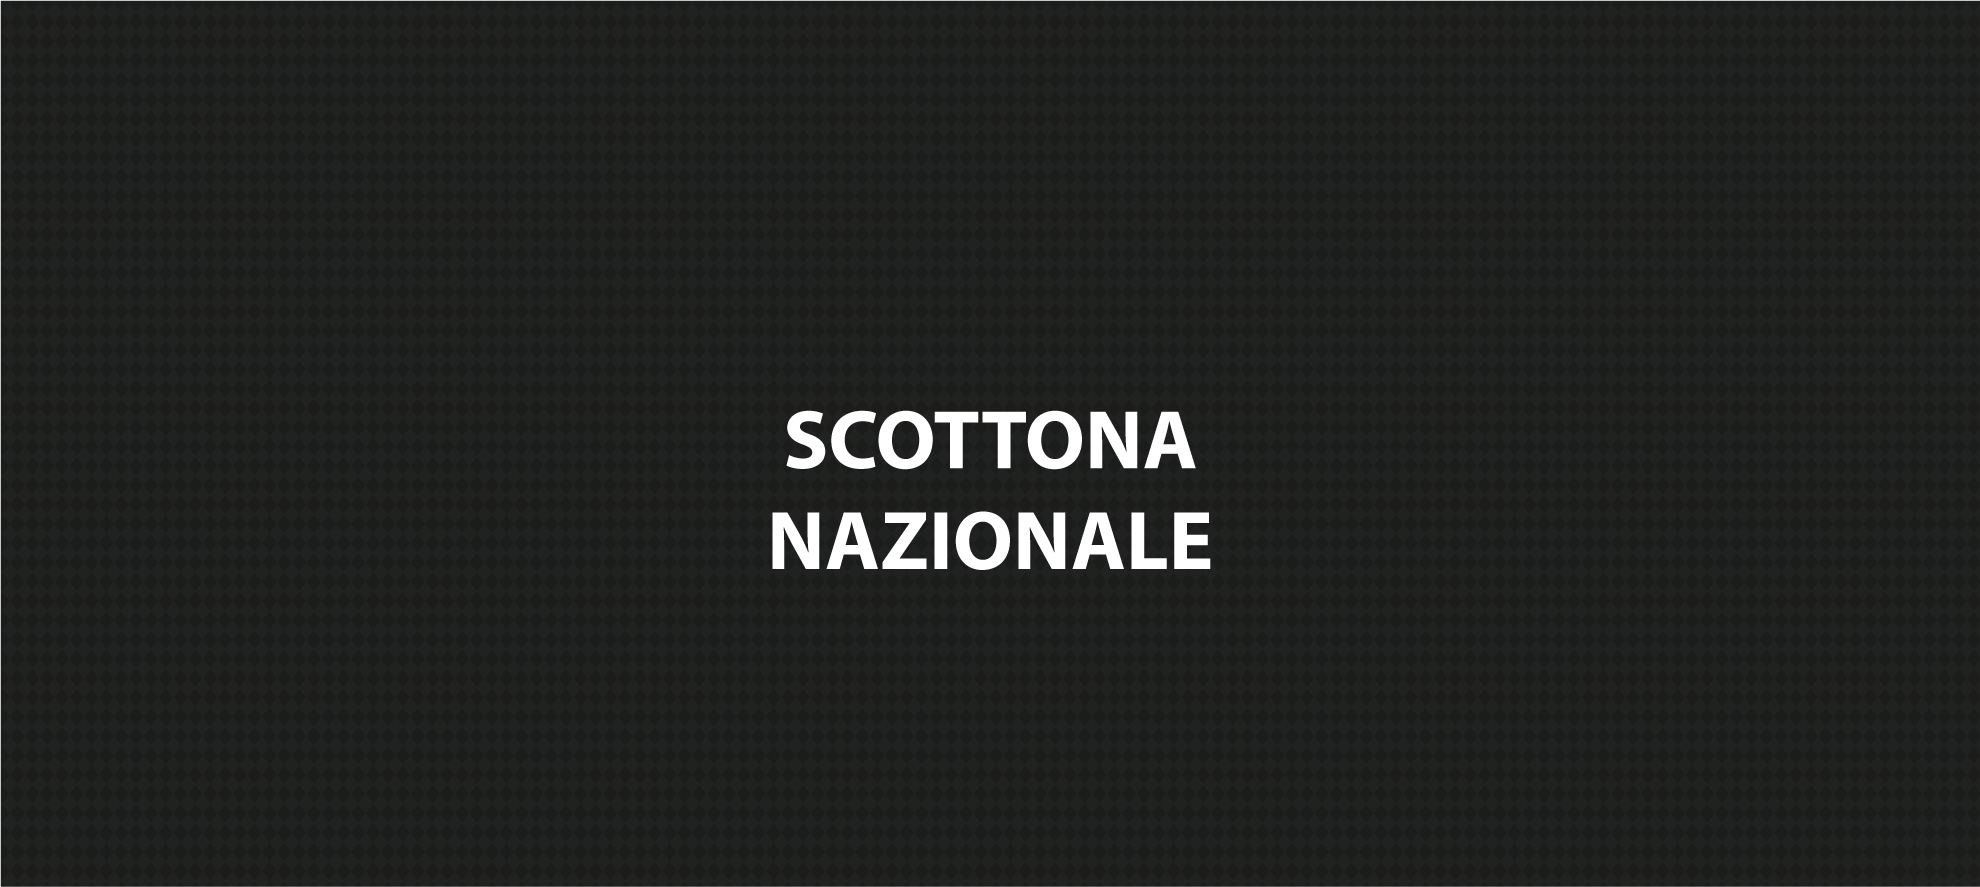 Scottona Nazionale